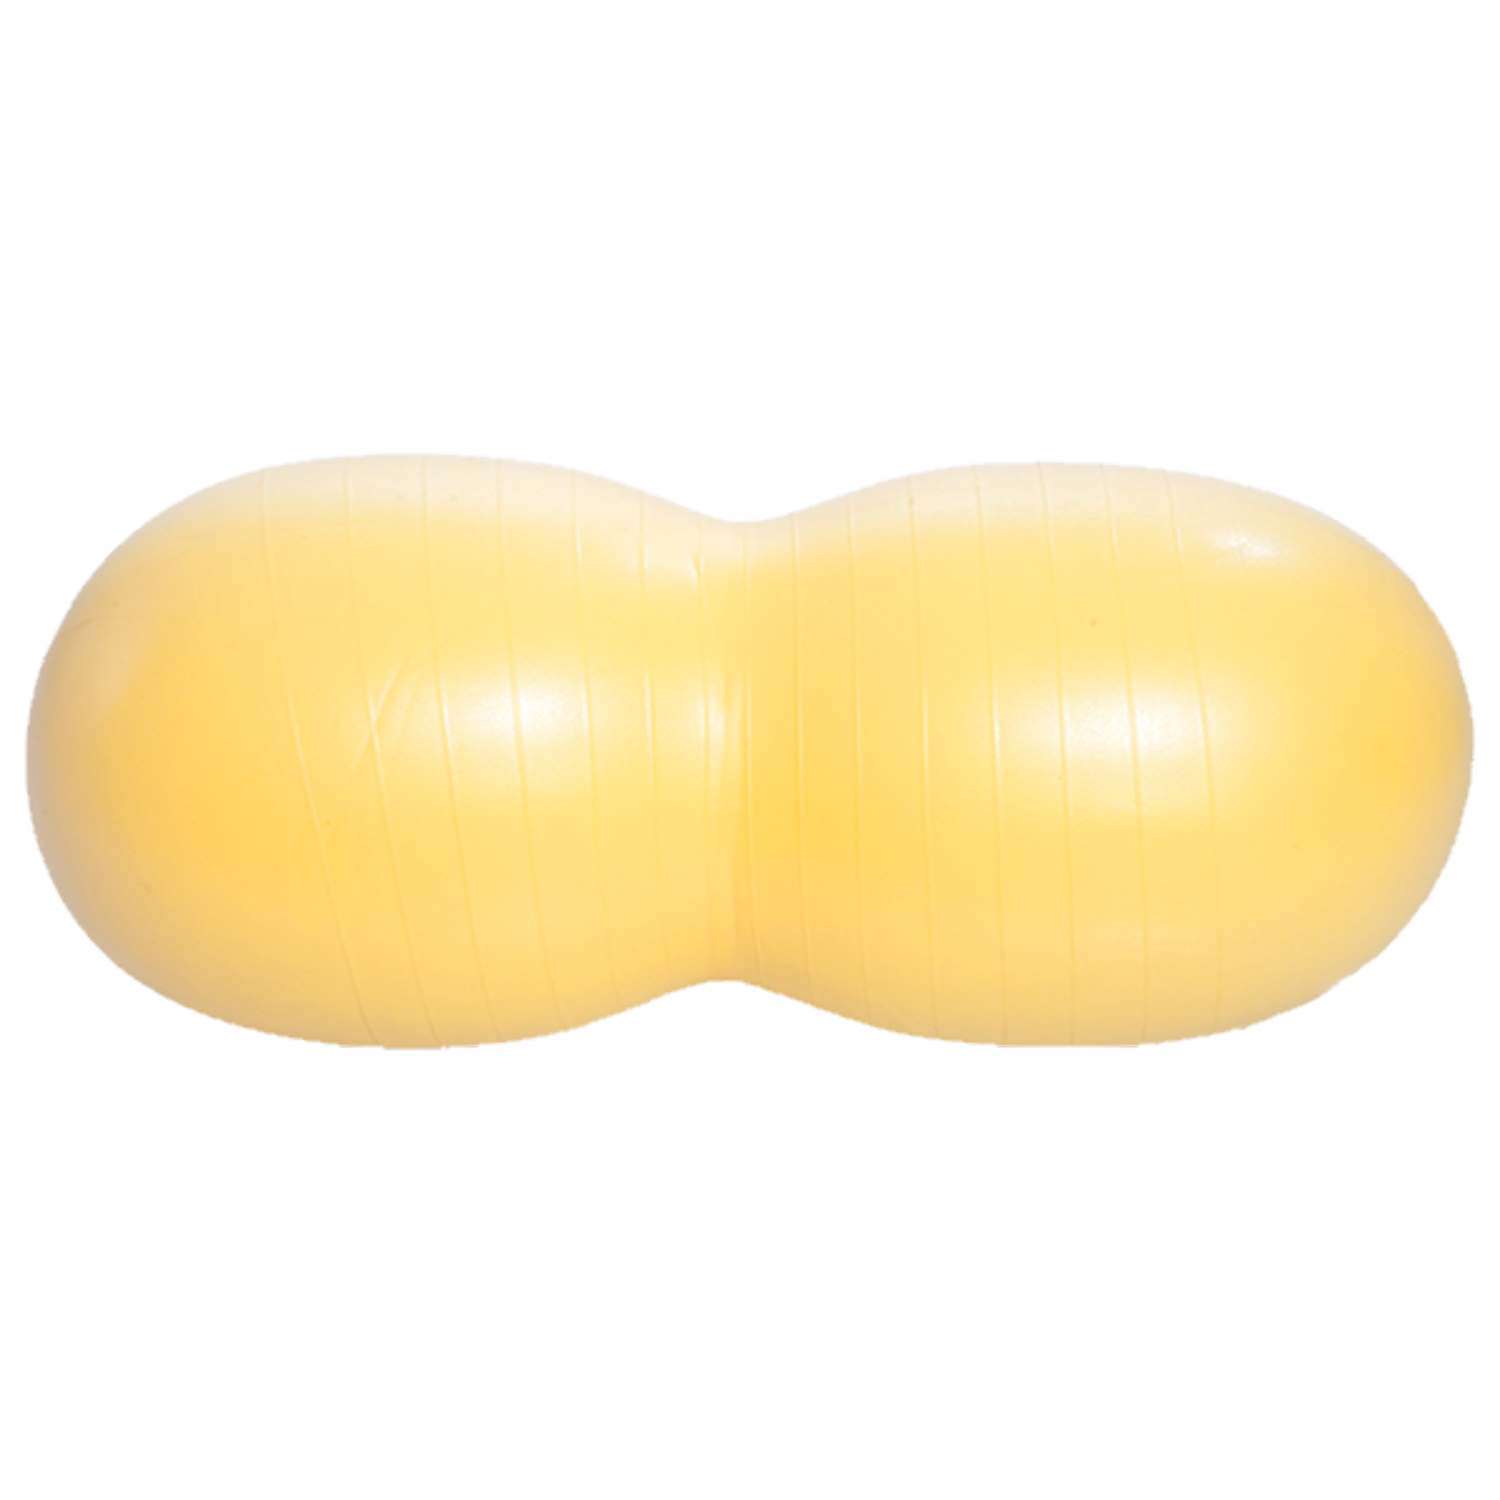 Мяч Trives для занятия лечебной физкультурой диаметр 40см желтый М-240 - фото 1